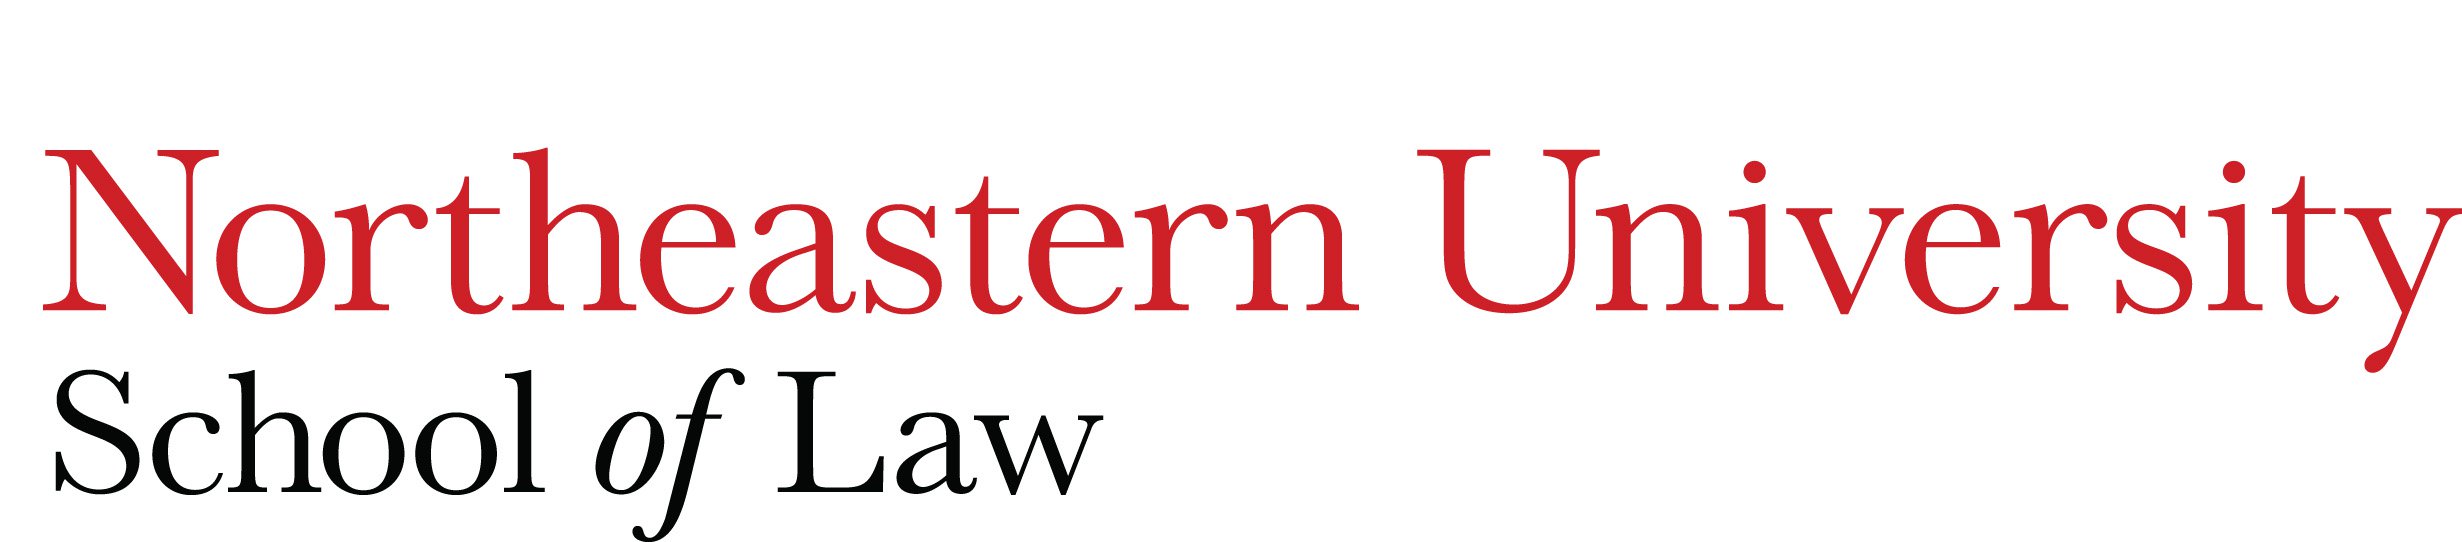 Northeastern University Law School Ranking CollegeLearners